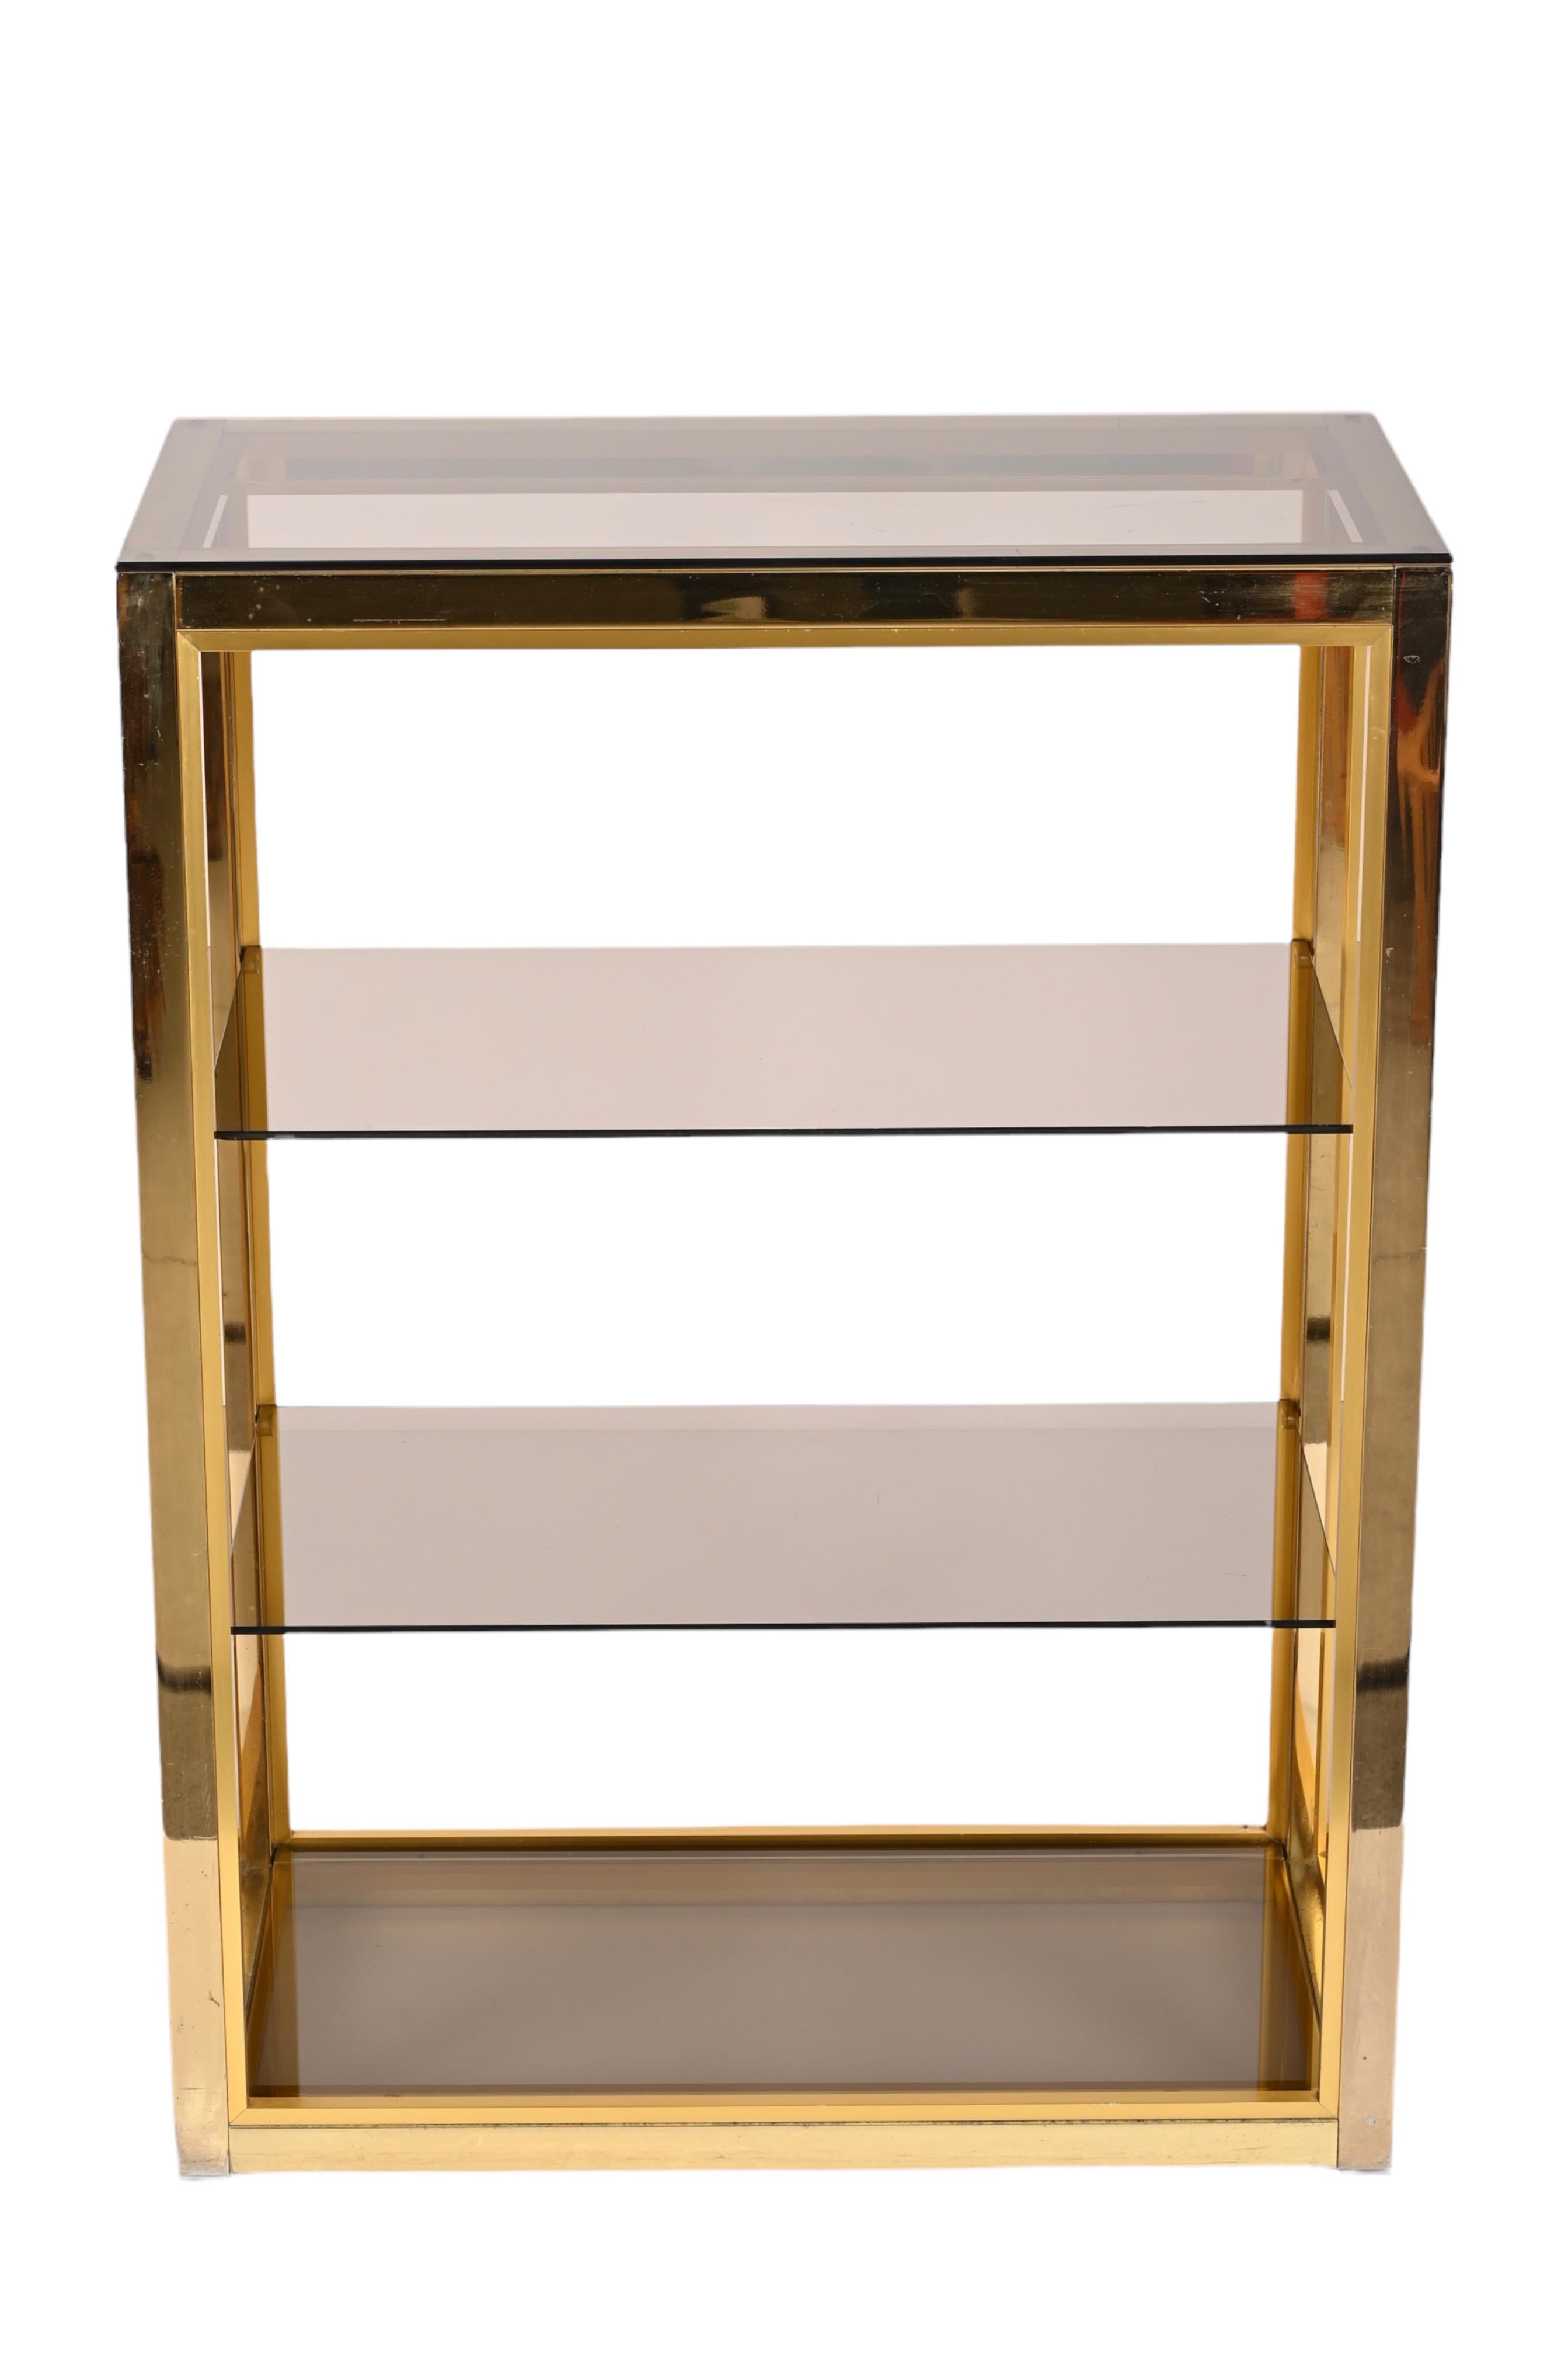 Metal Renato Zevi Gilded Brass Italian Bookcase with Glass Shelves, Romeo Rega 1970s For Sale